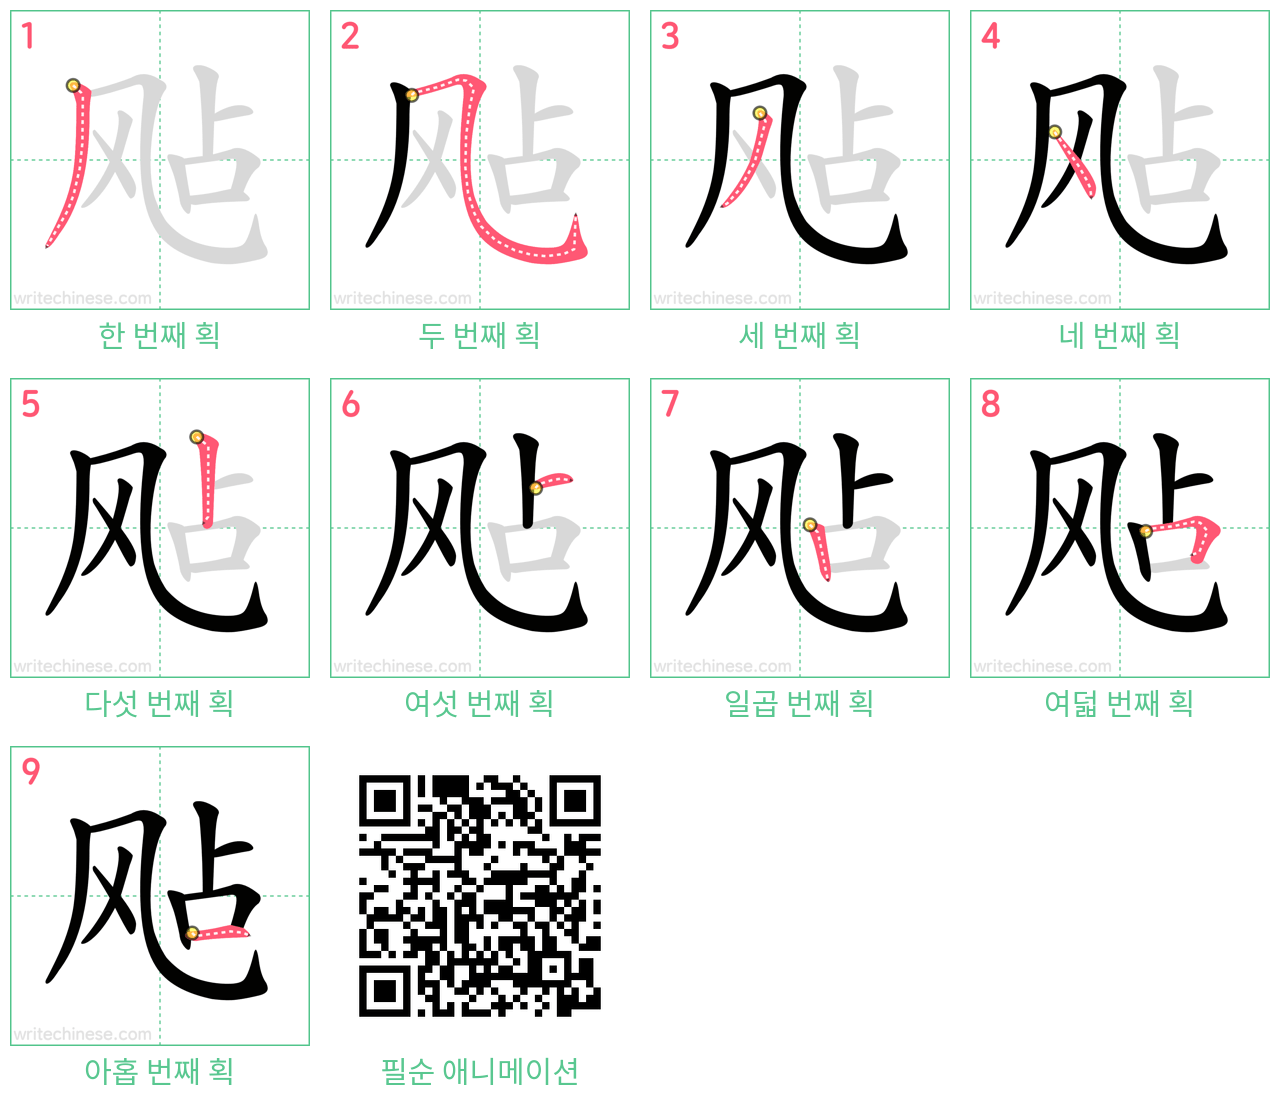 飐 step-by-step stroke order diagrams